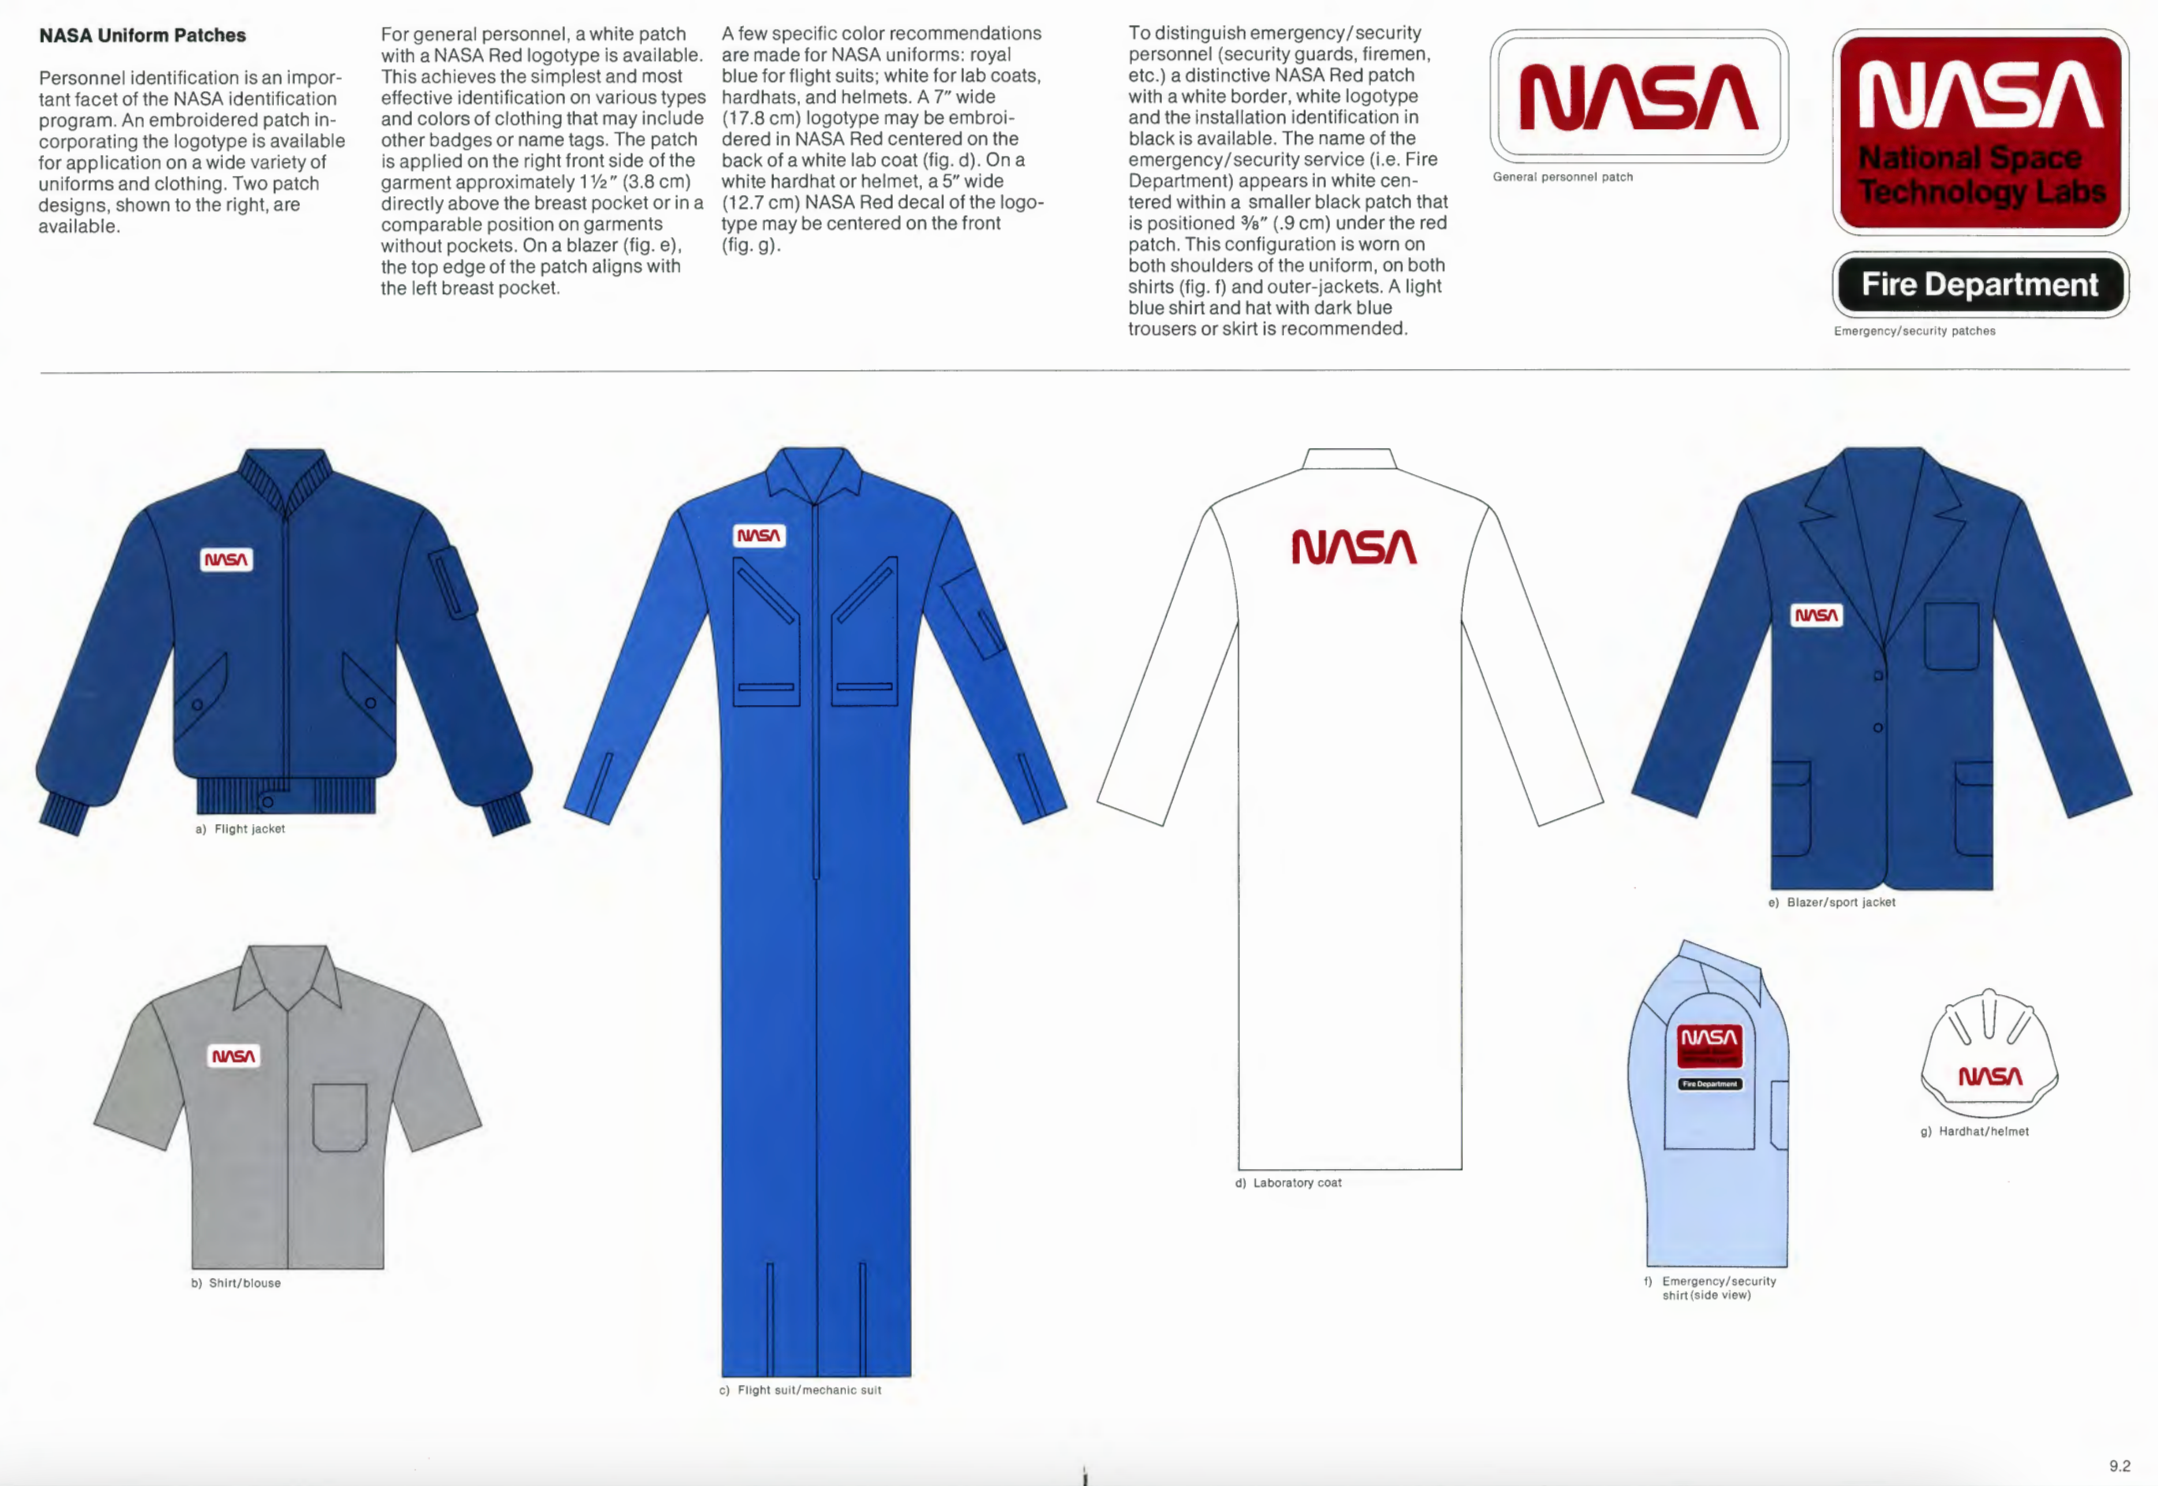 A screenshot of NASA's original design guide